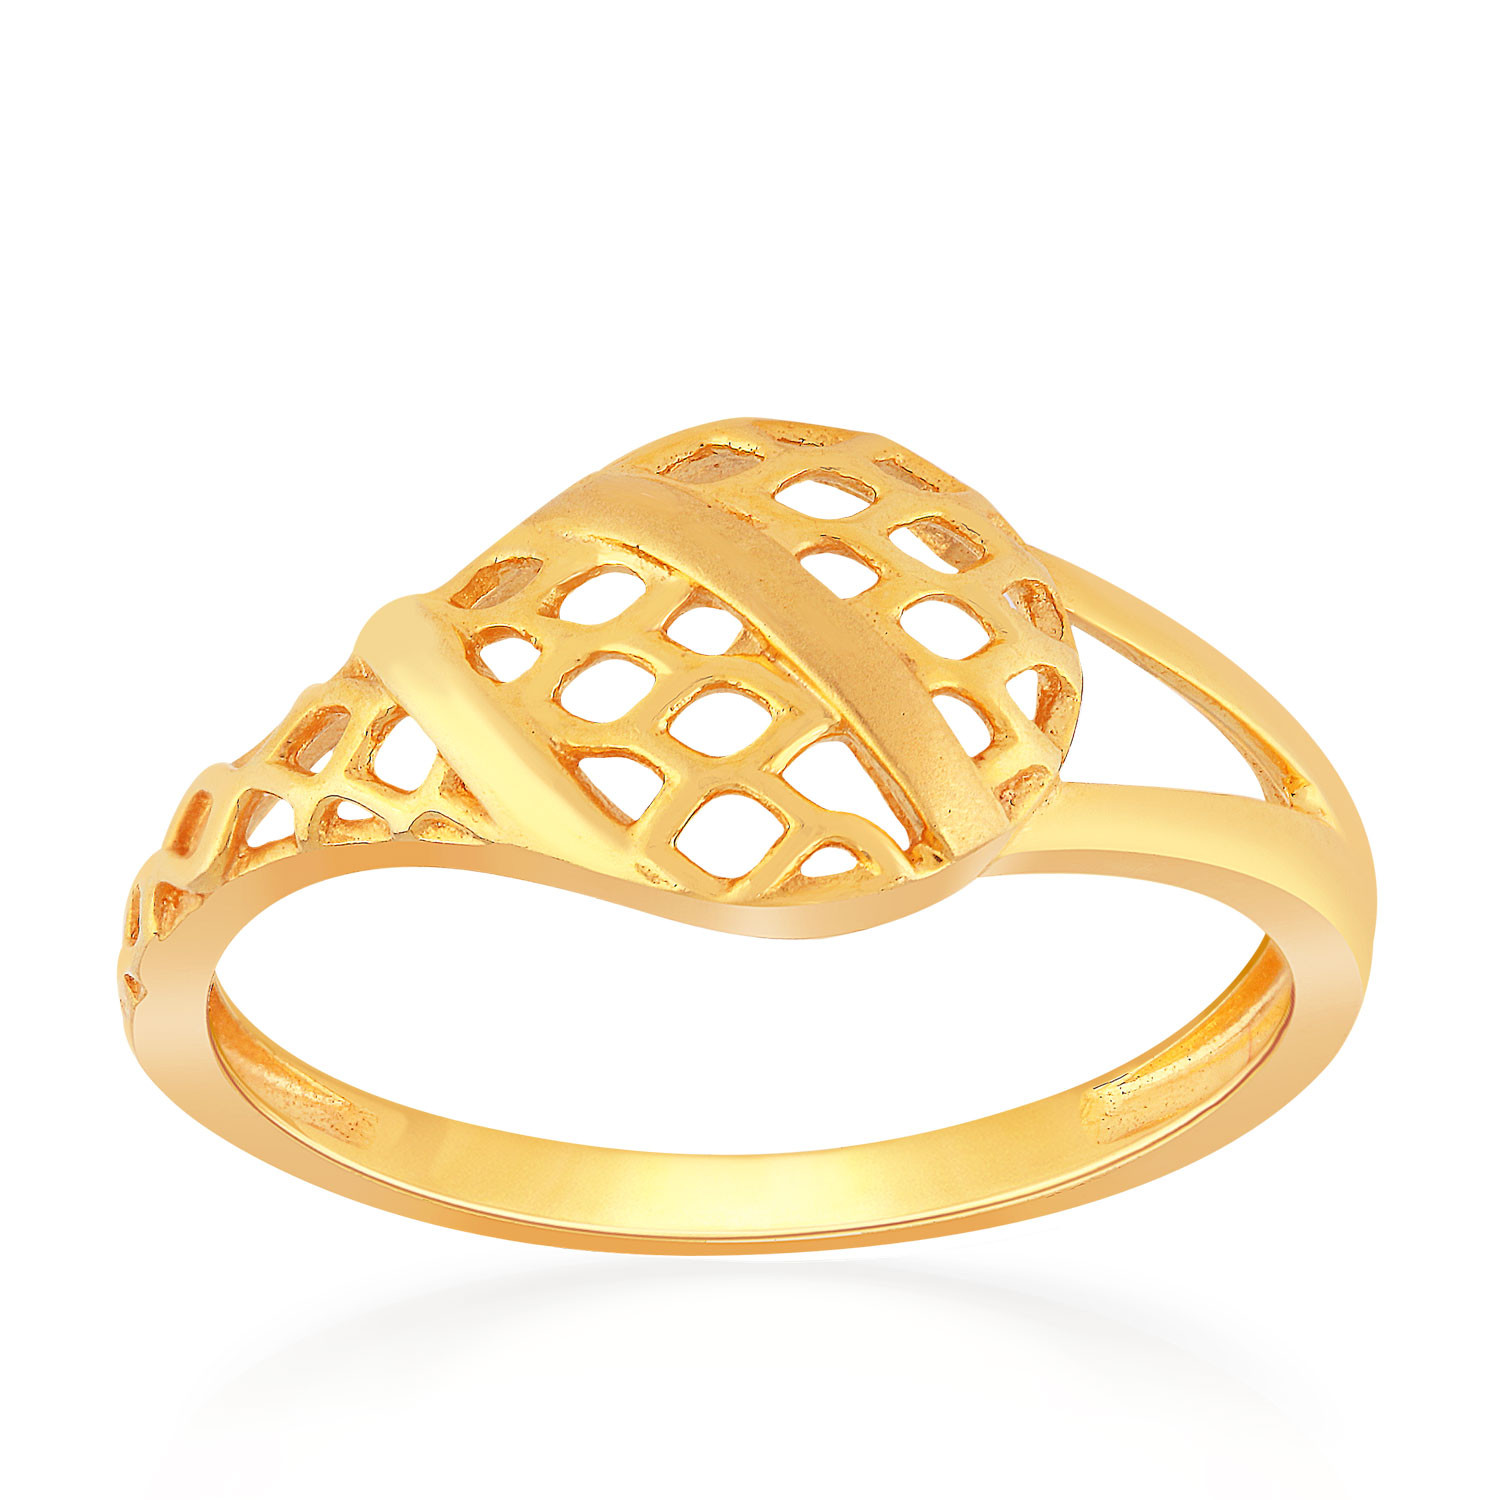 Buy Malabar Gold Ring MHAAAAAGQHYC for Women Online | Malabar Gold ...